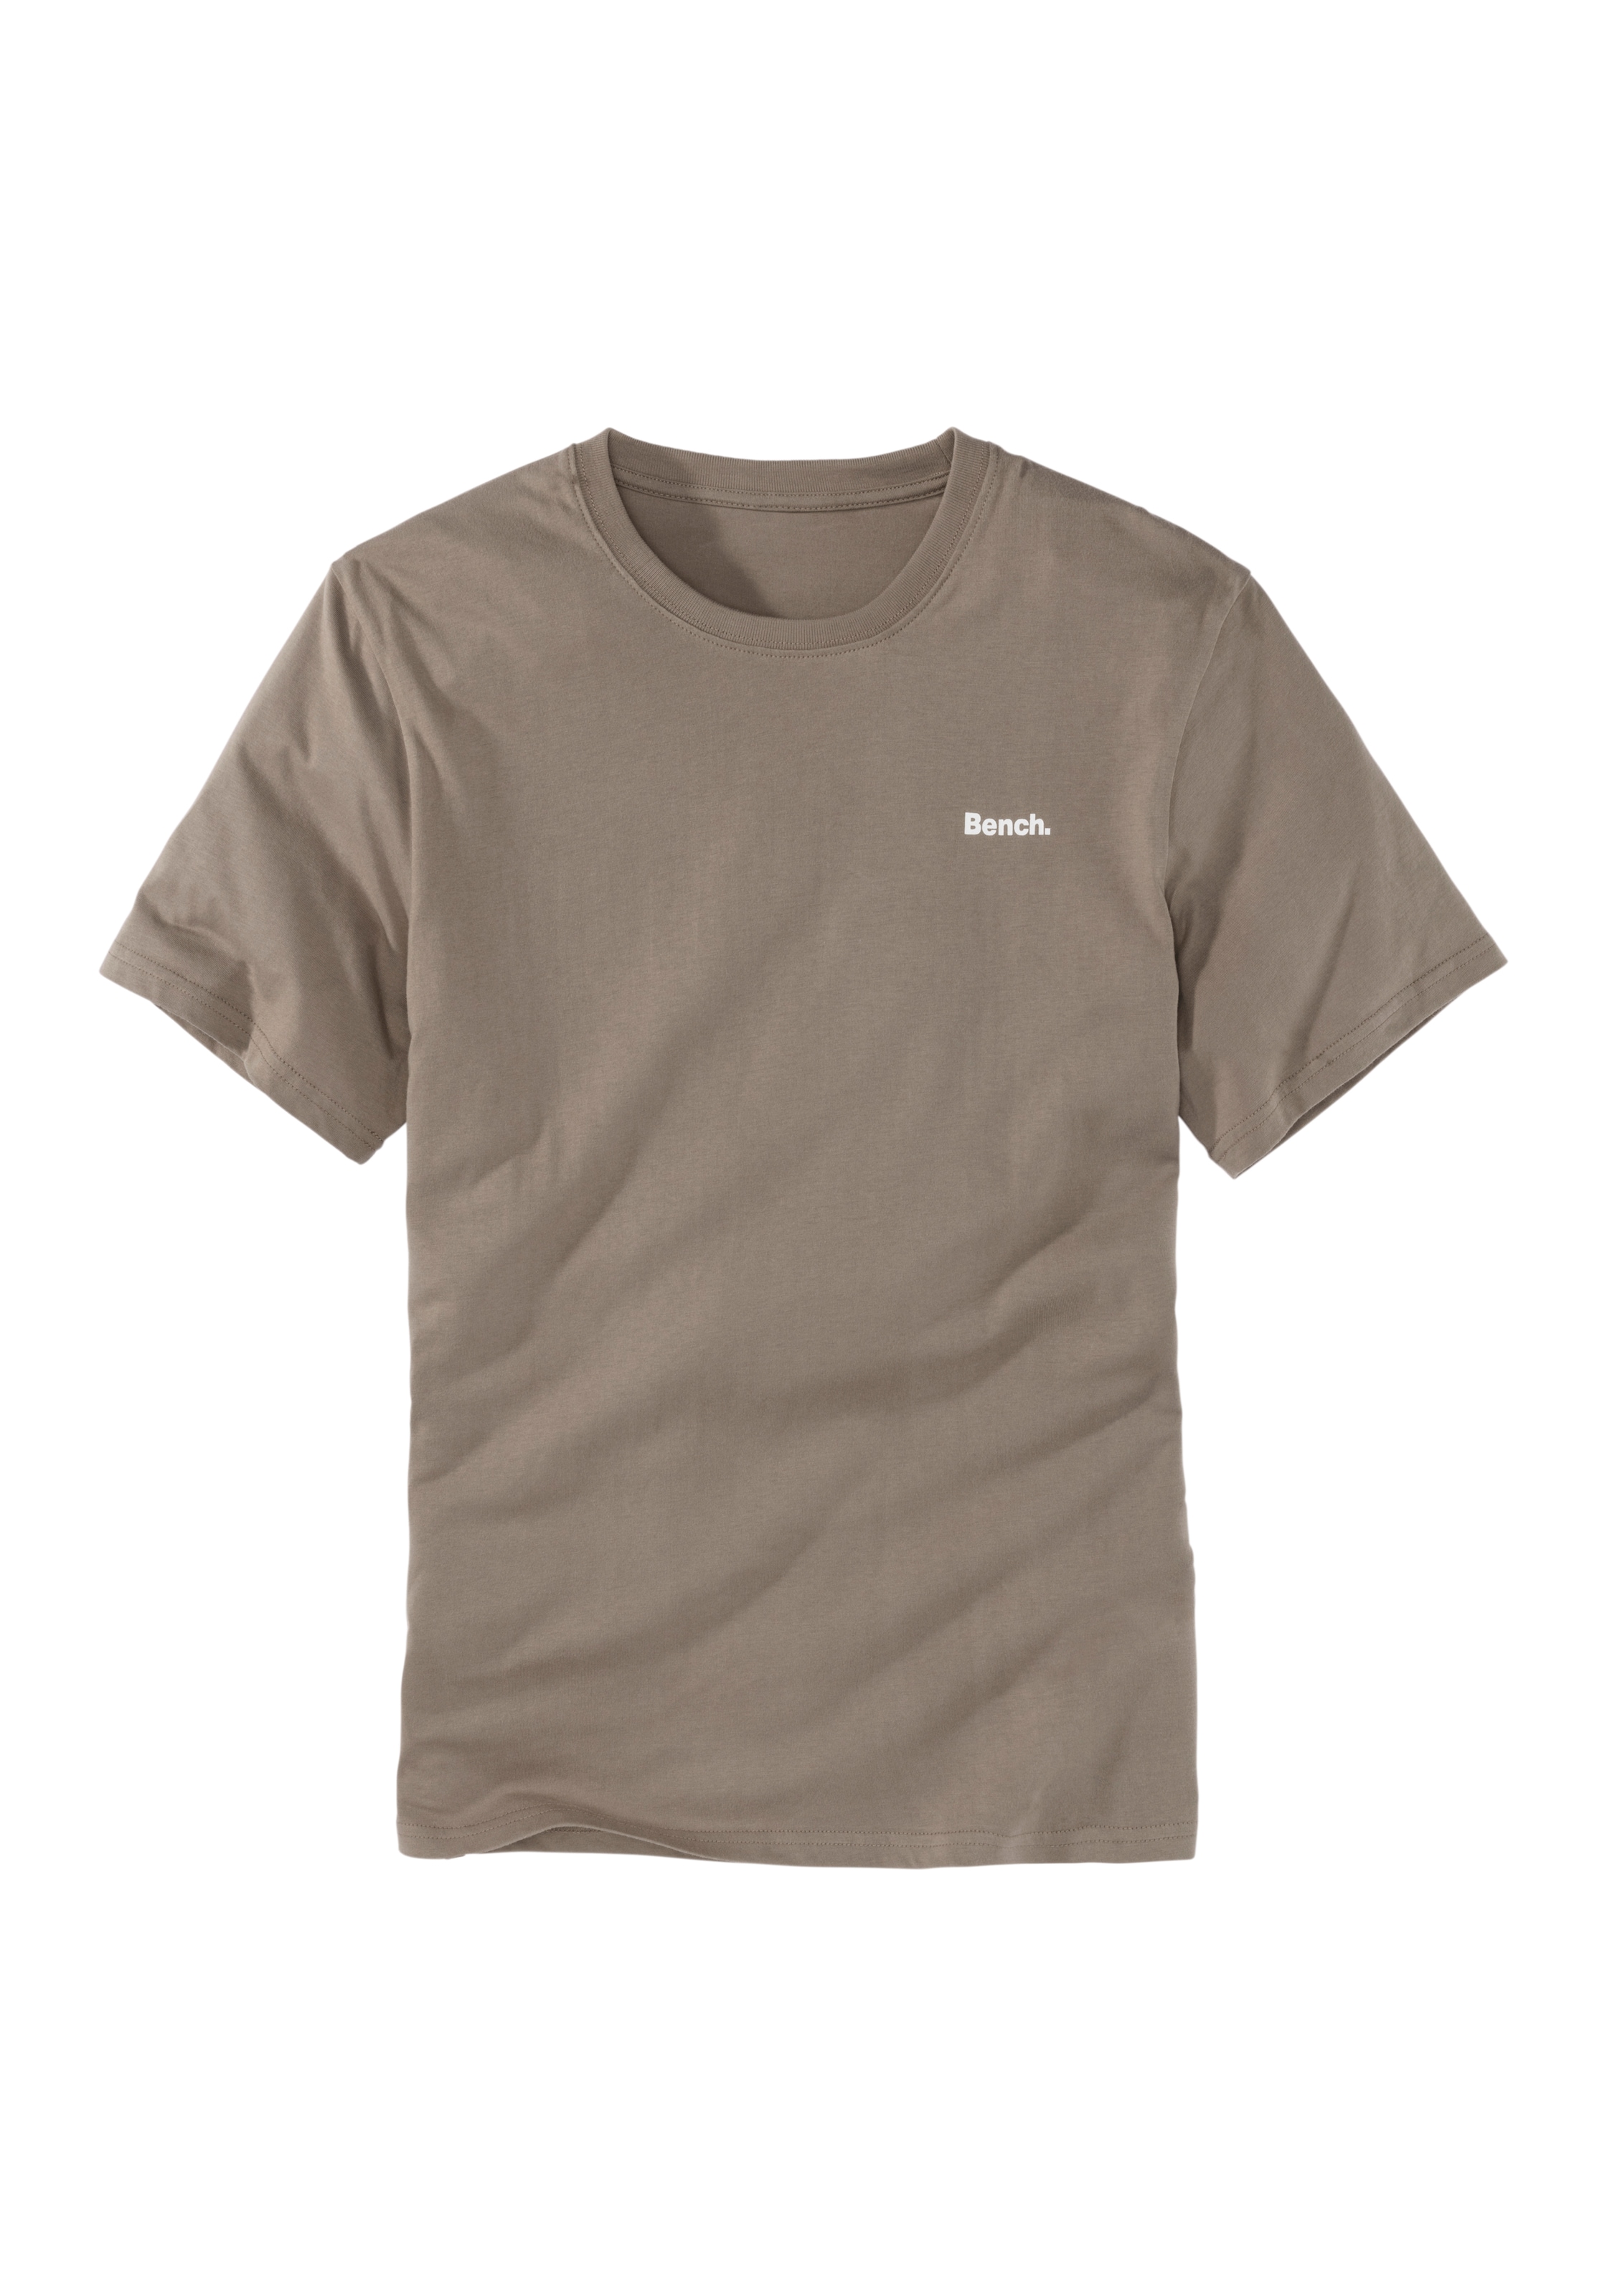 Bench. Loungewear T-Shirt, mit kleinem Markenaufdruck vorn